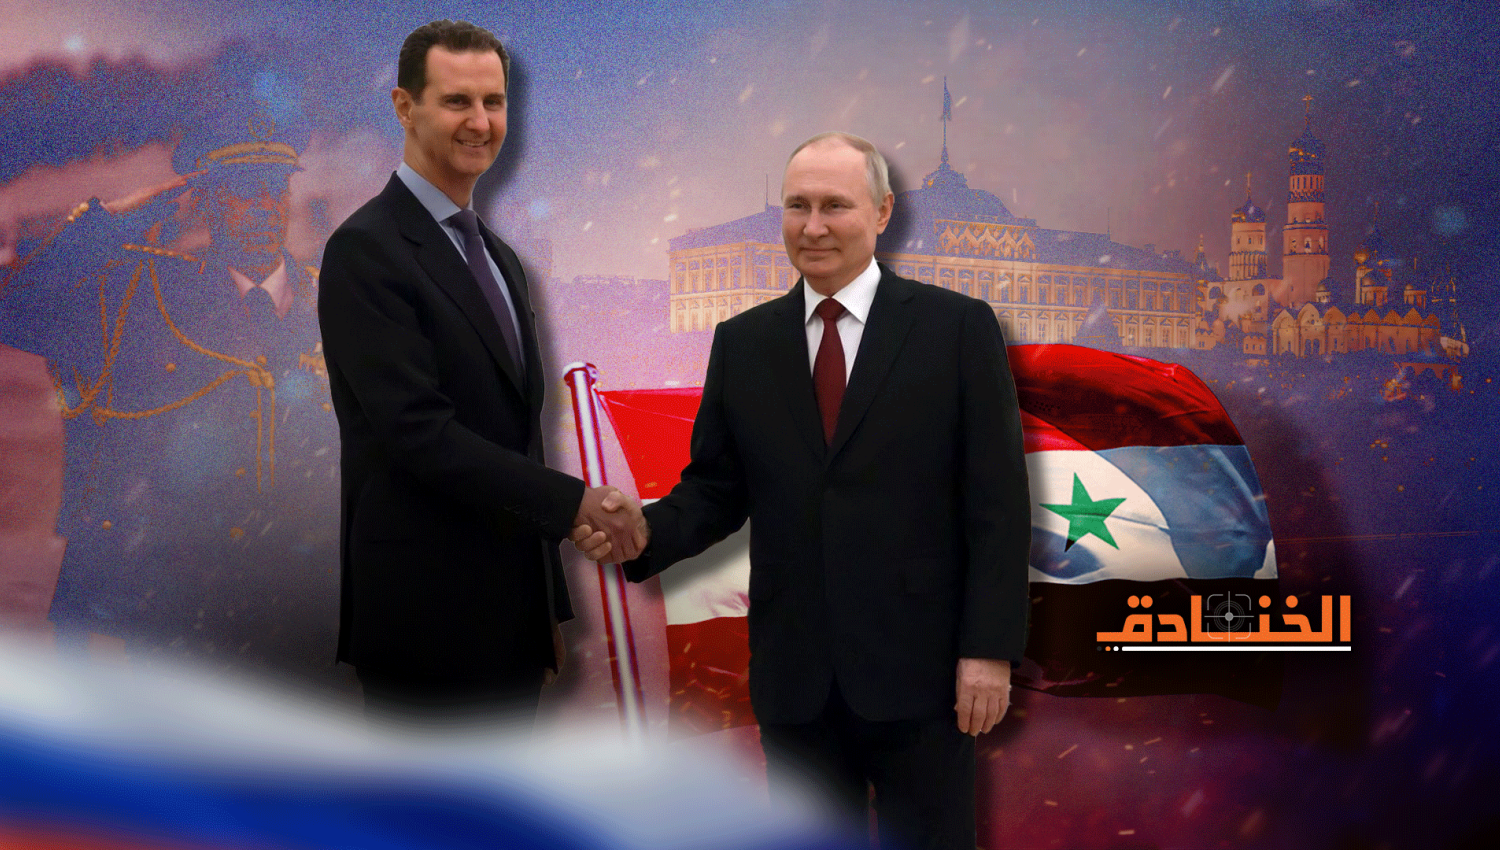 زيارة الرئيس الأسد الى روسيا: التخطيط للمرحلة العالمية المقبلة